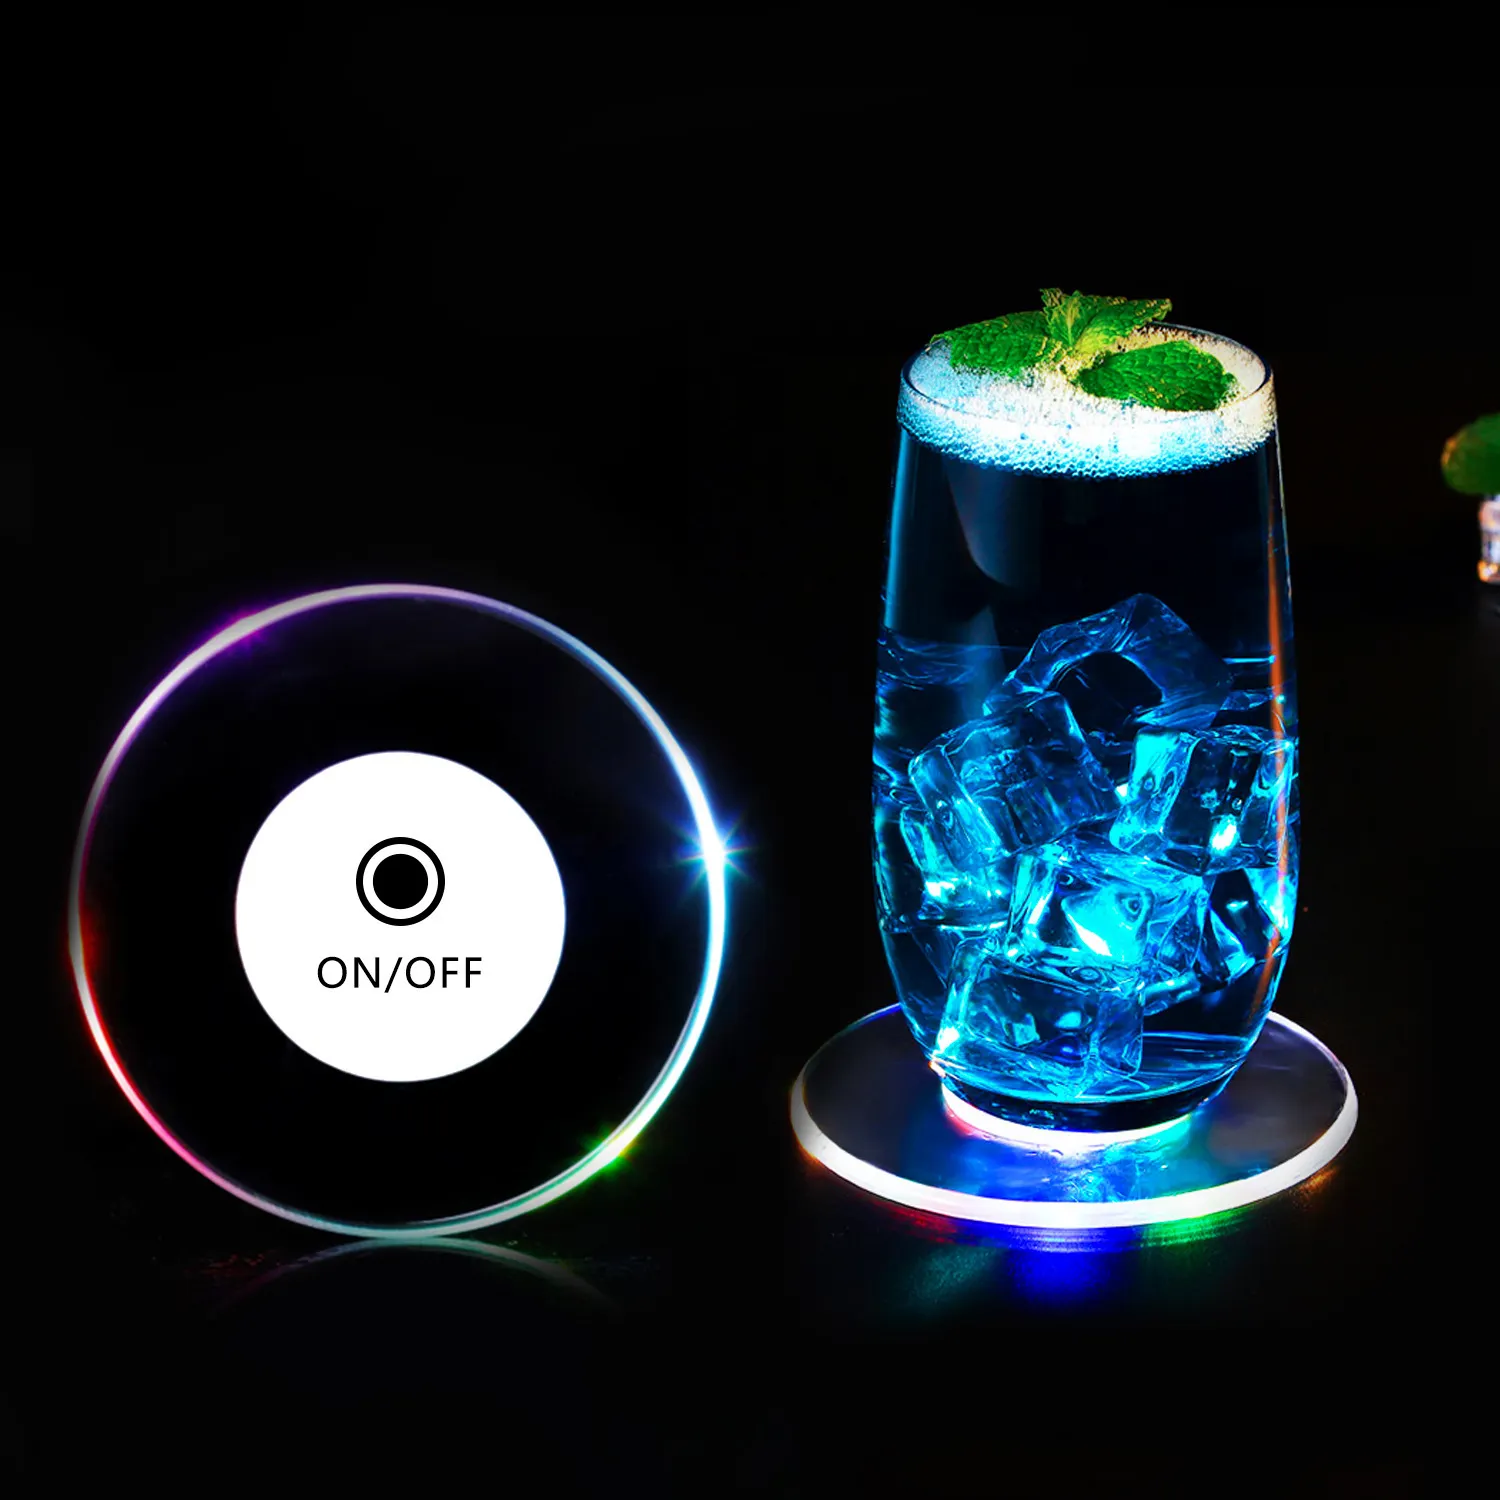 Светодиодные Подставки ZJI подставки светодиодные подсветки для бутылок цветные RGB подставки для бутылок наклейки светодиодные подставки диски подсветка